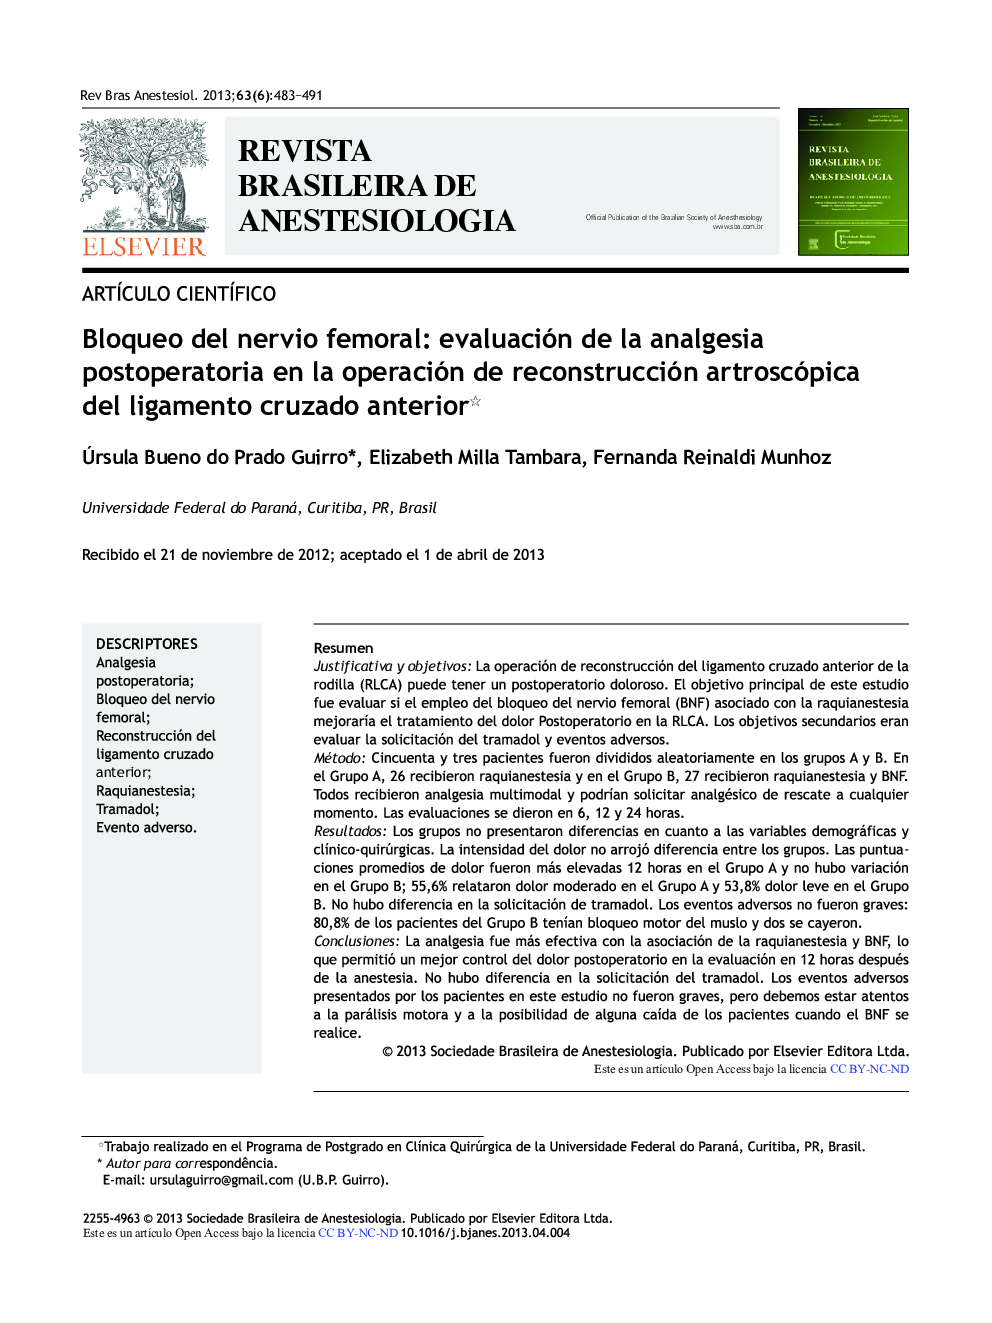 Bloqueo del nervio femoral: Evaluación de la analgesia postoperatoria en la operación de reconstrucción artroscópica del ligamento cruzado anterior 